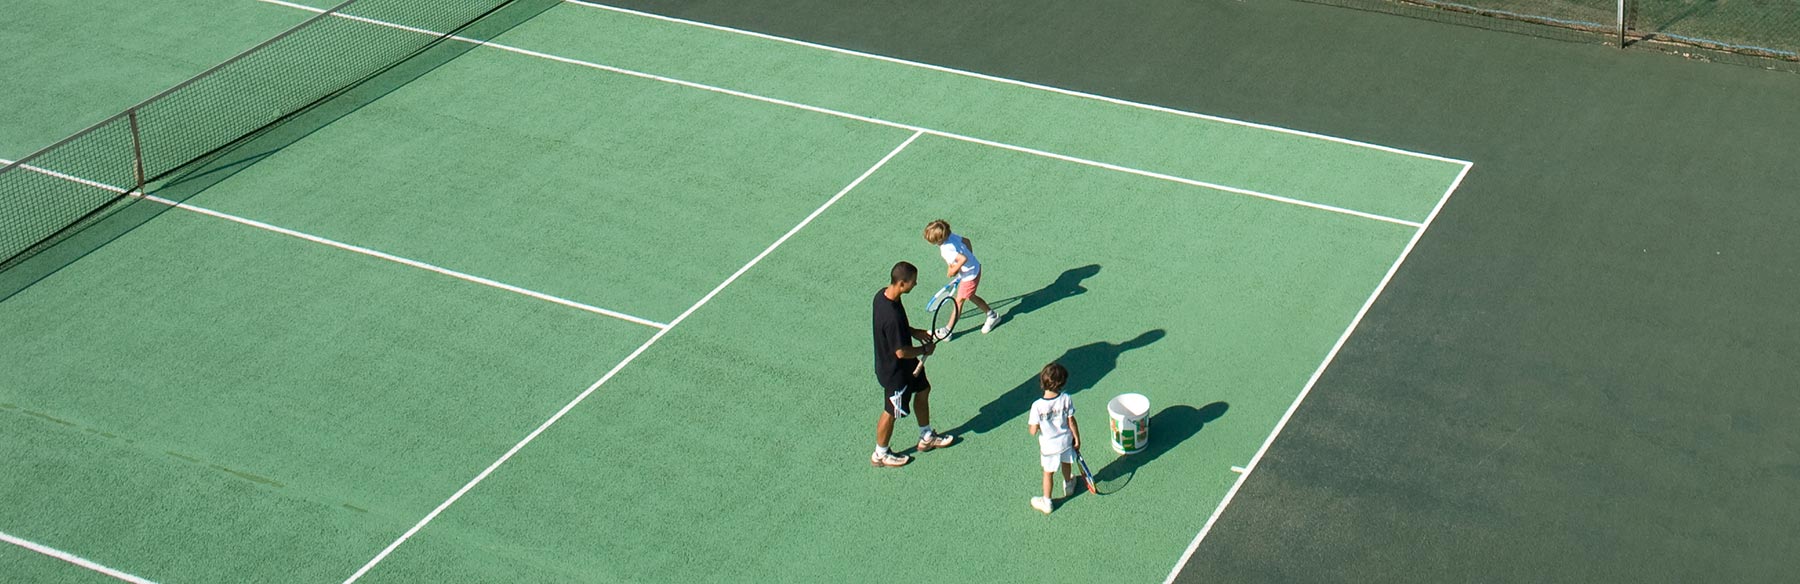 Un moniteur de tennis donne un cours à deux enfants.